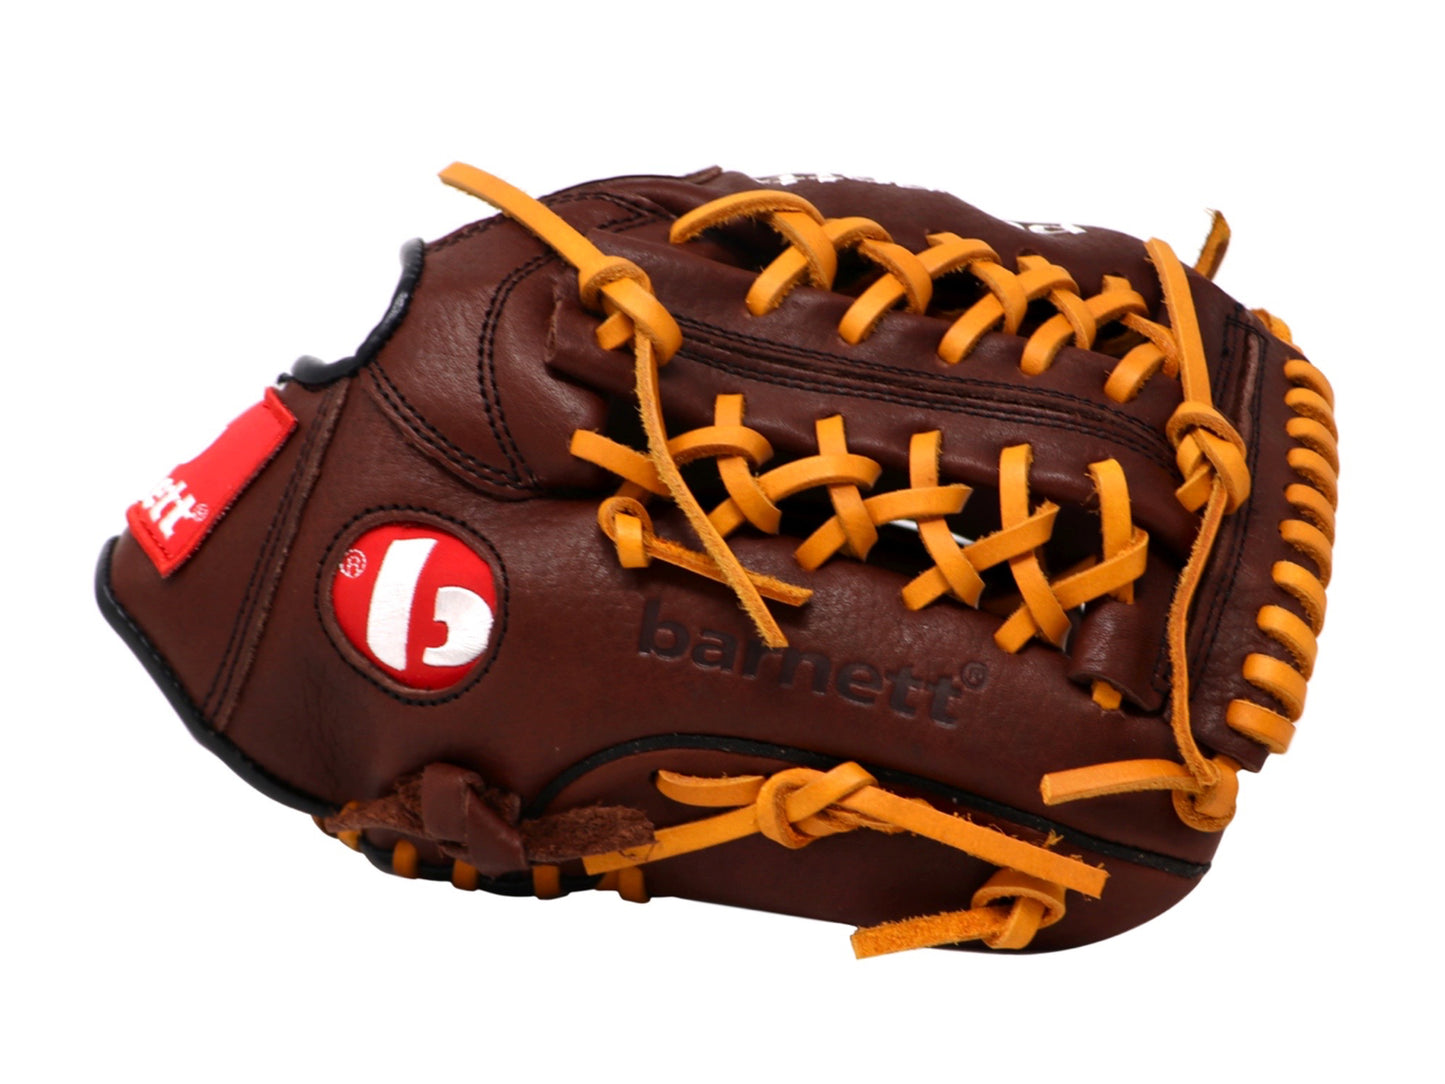 GL-110 Baseball Handschuh, Echtleder, Wettkampf, Infield Größe 11 (inch), braun